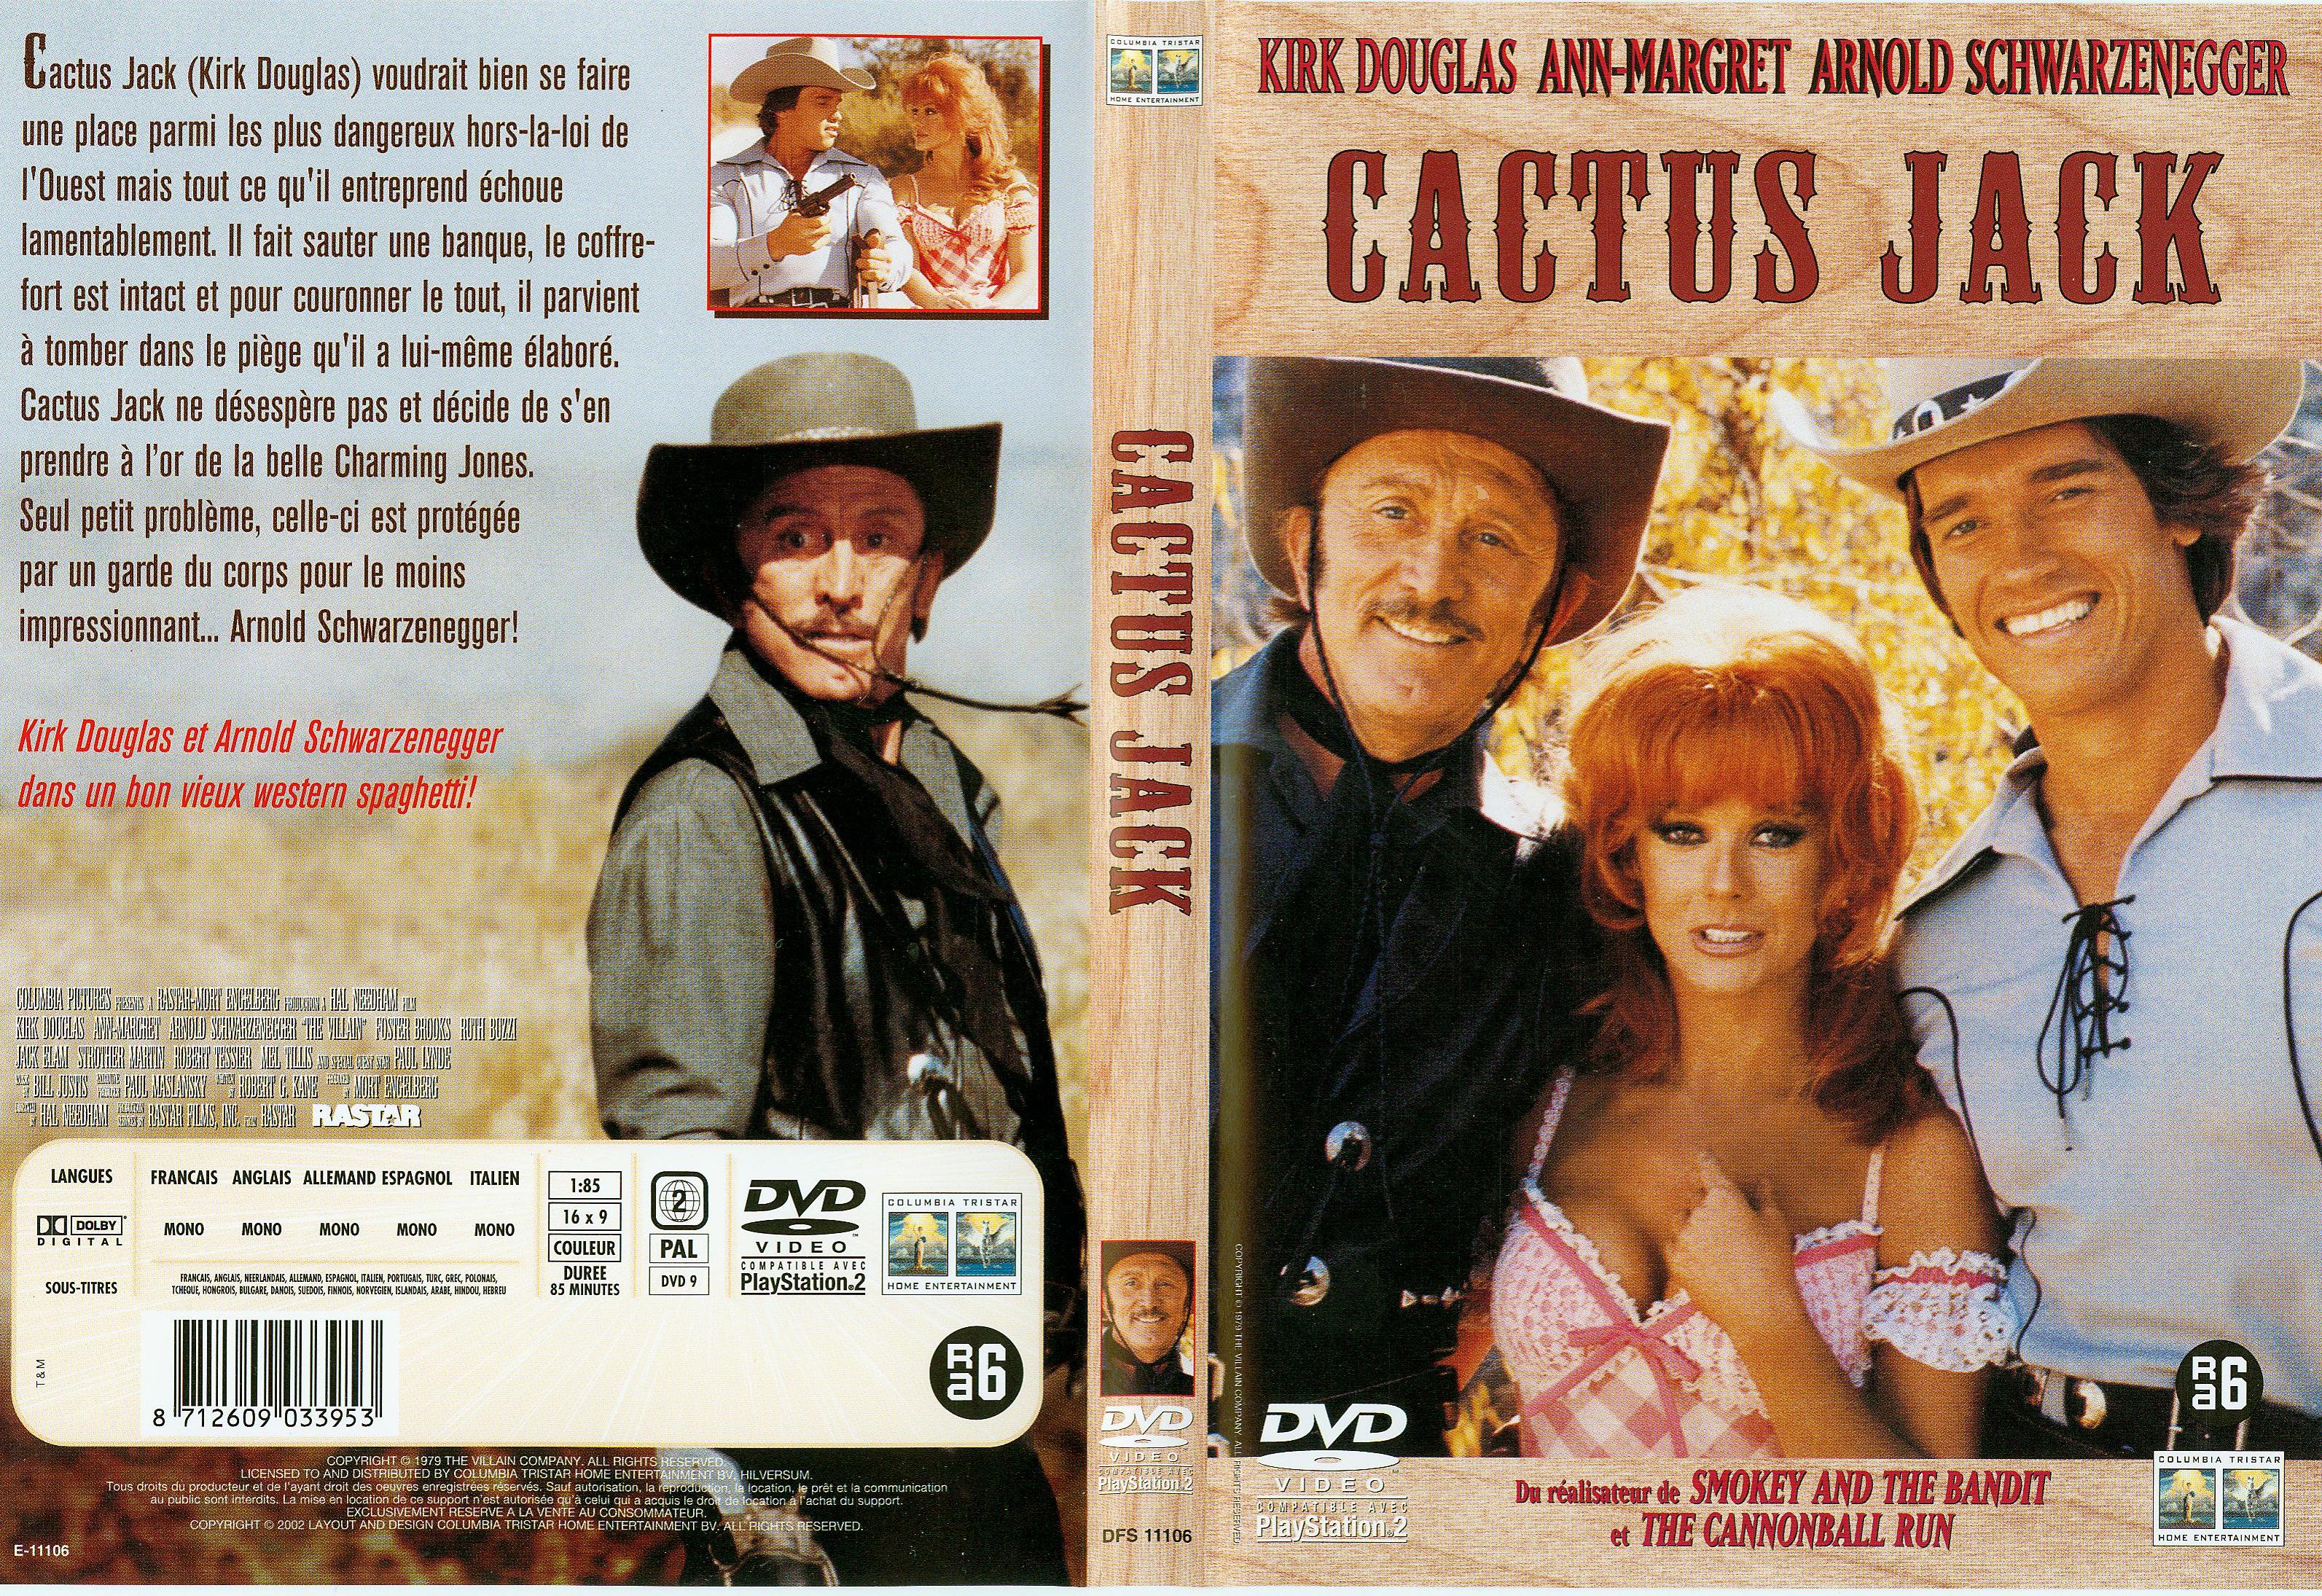 Jaquette DVD de Cactus Jack - Cinéma Passion3186 x 2190